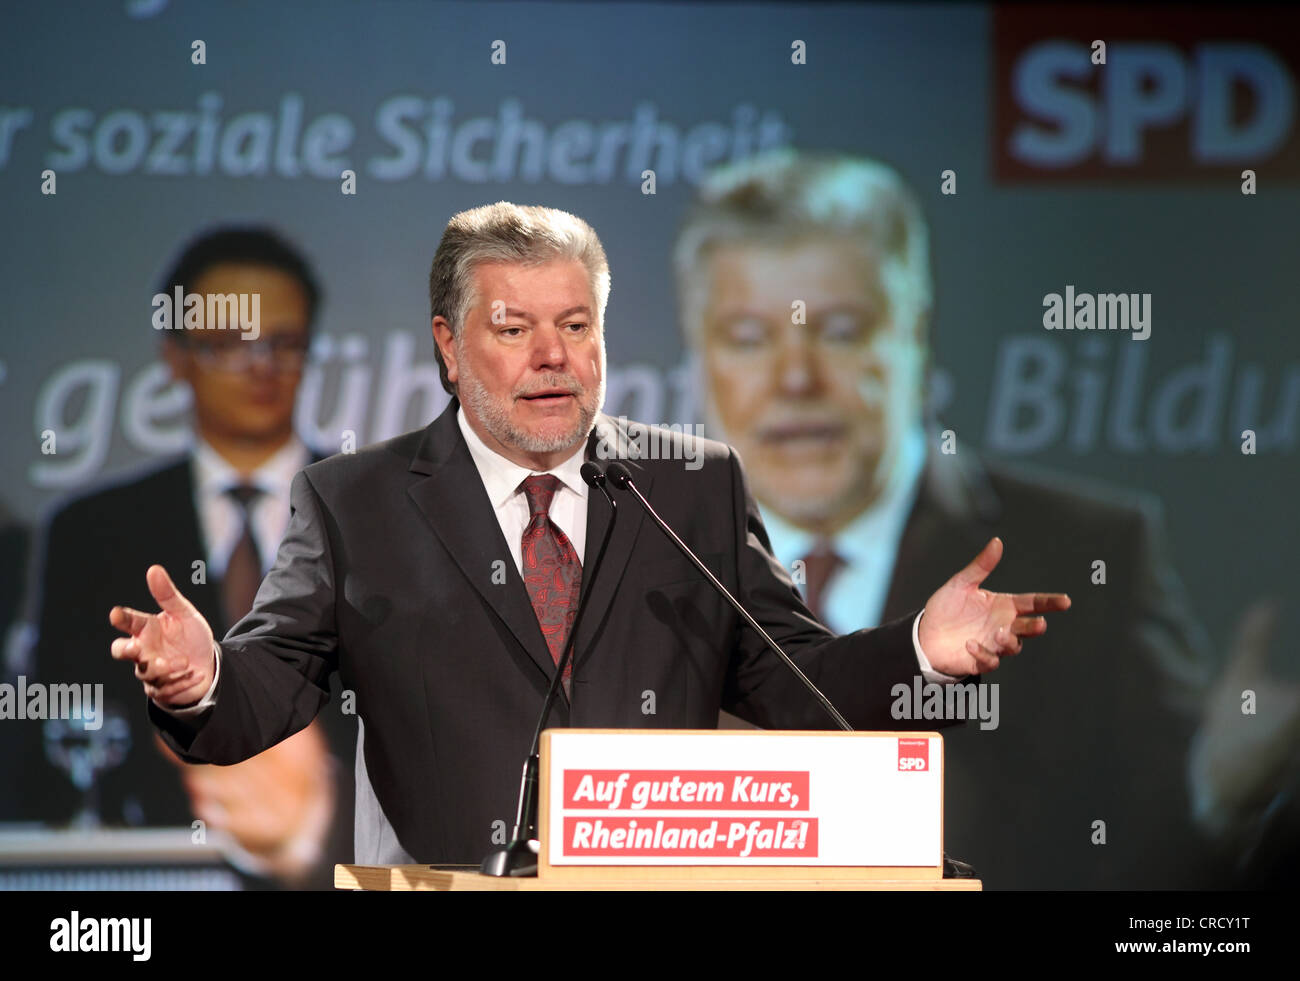 Kurt Beck, Premier ministre de la Rhénanie-Palatinat, SPD, Parti social-démocrate, s'exprimant lors d'une campagne électorale à Bendorf Banque D'Images